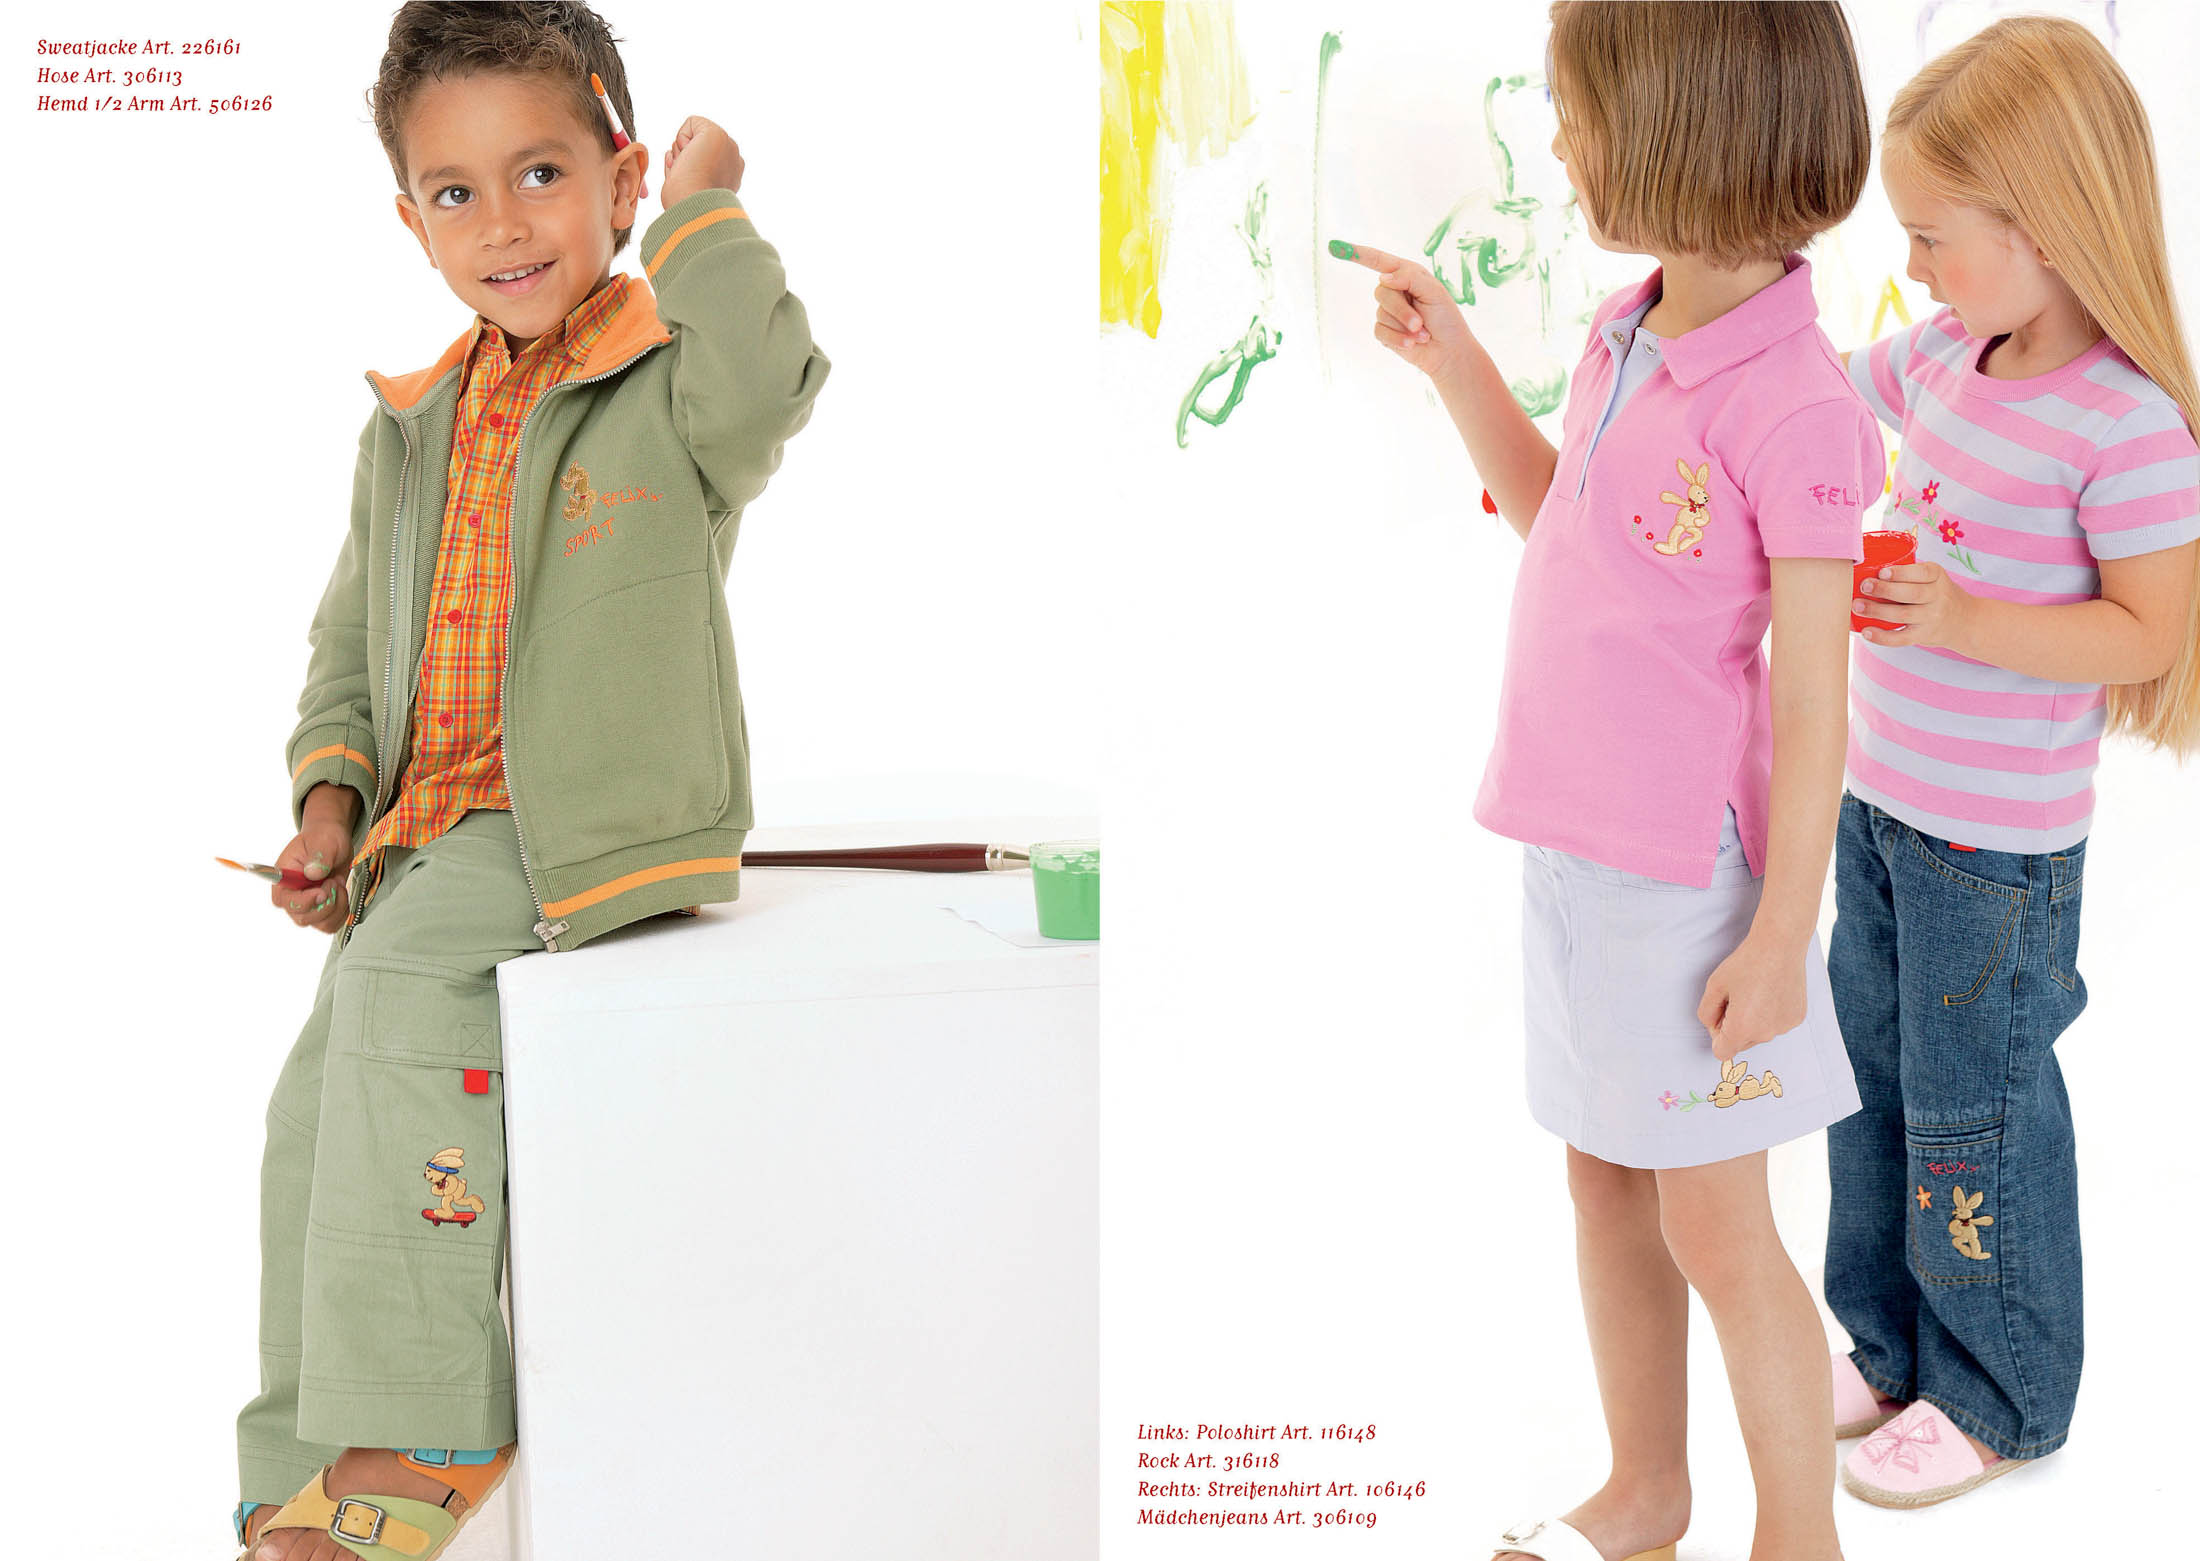 Zwei Bilder: Links posiert ein kleiner Junge in kariertem Hemd und grünen Hosen lächelnd auf einer weißen Schachtel. Rechts betrachten zwei junge Mädchen in rosa Hemden und Jeans ein grünes Gemälde, das sie gemalt haben. © Fotografie Tomas Rodriguez